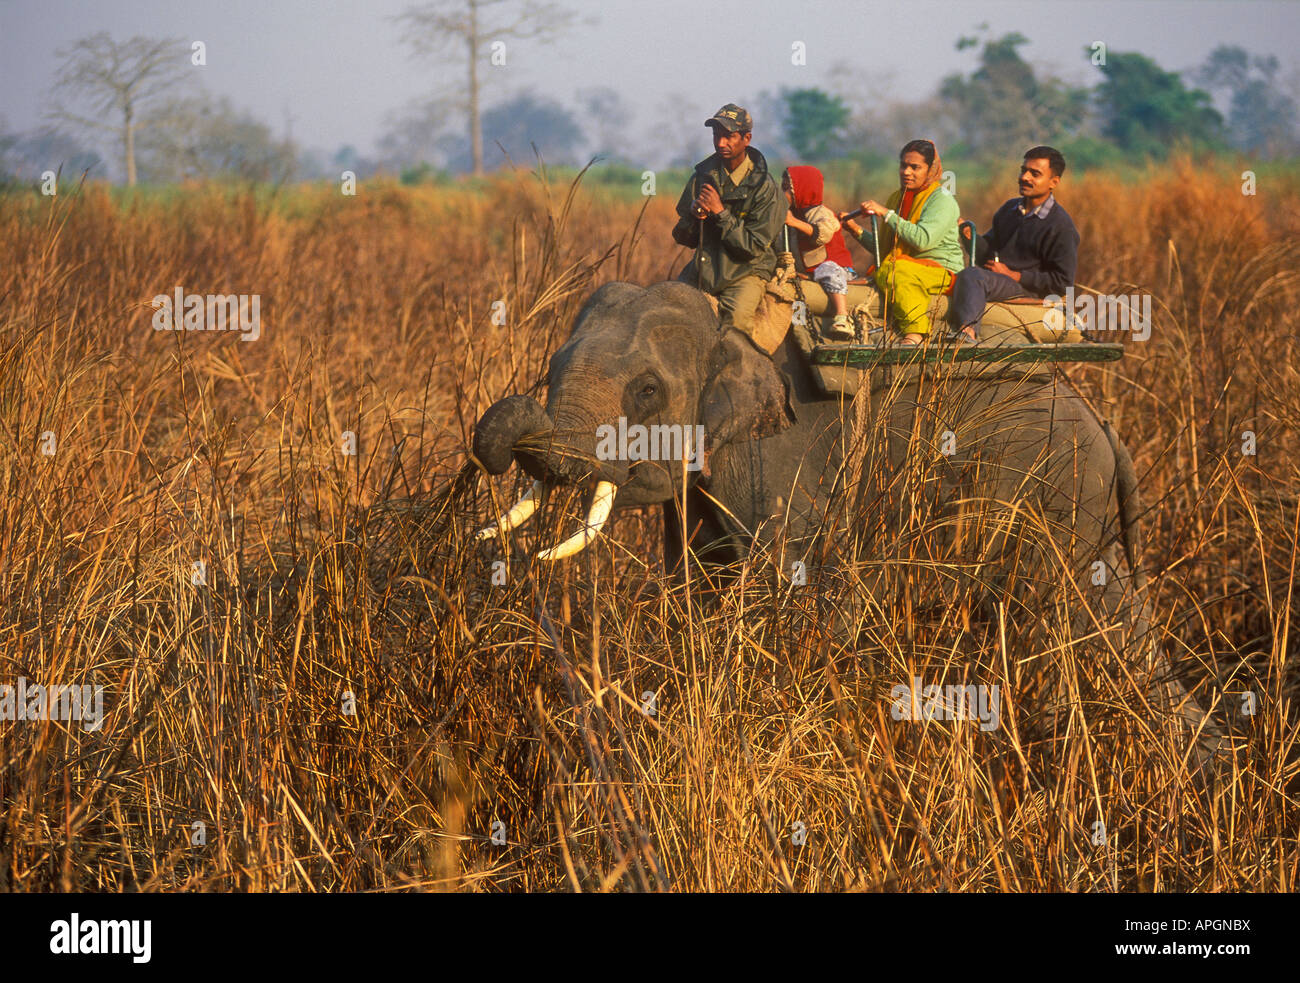 L'exécution d'éléphants domestiqués les touristes en safari dans le parc national de Kaziranga, Assam, Inde Banque D'Images